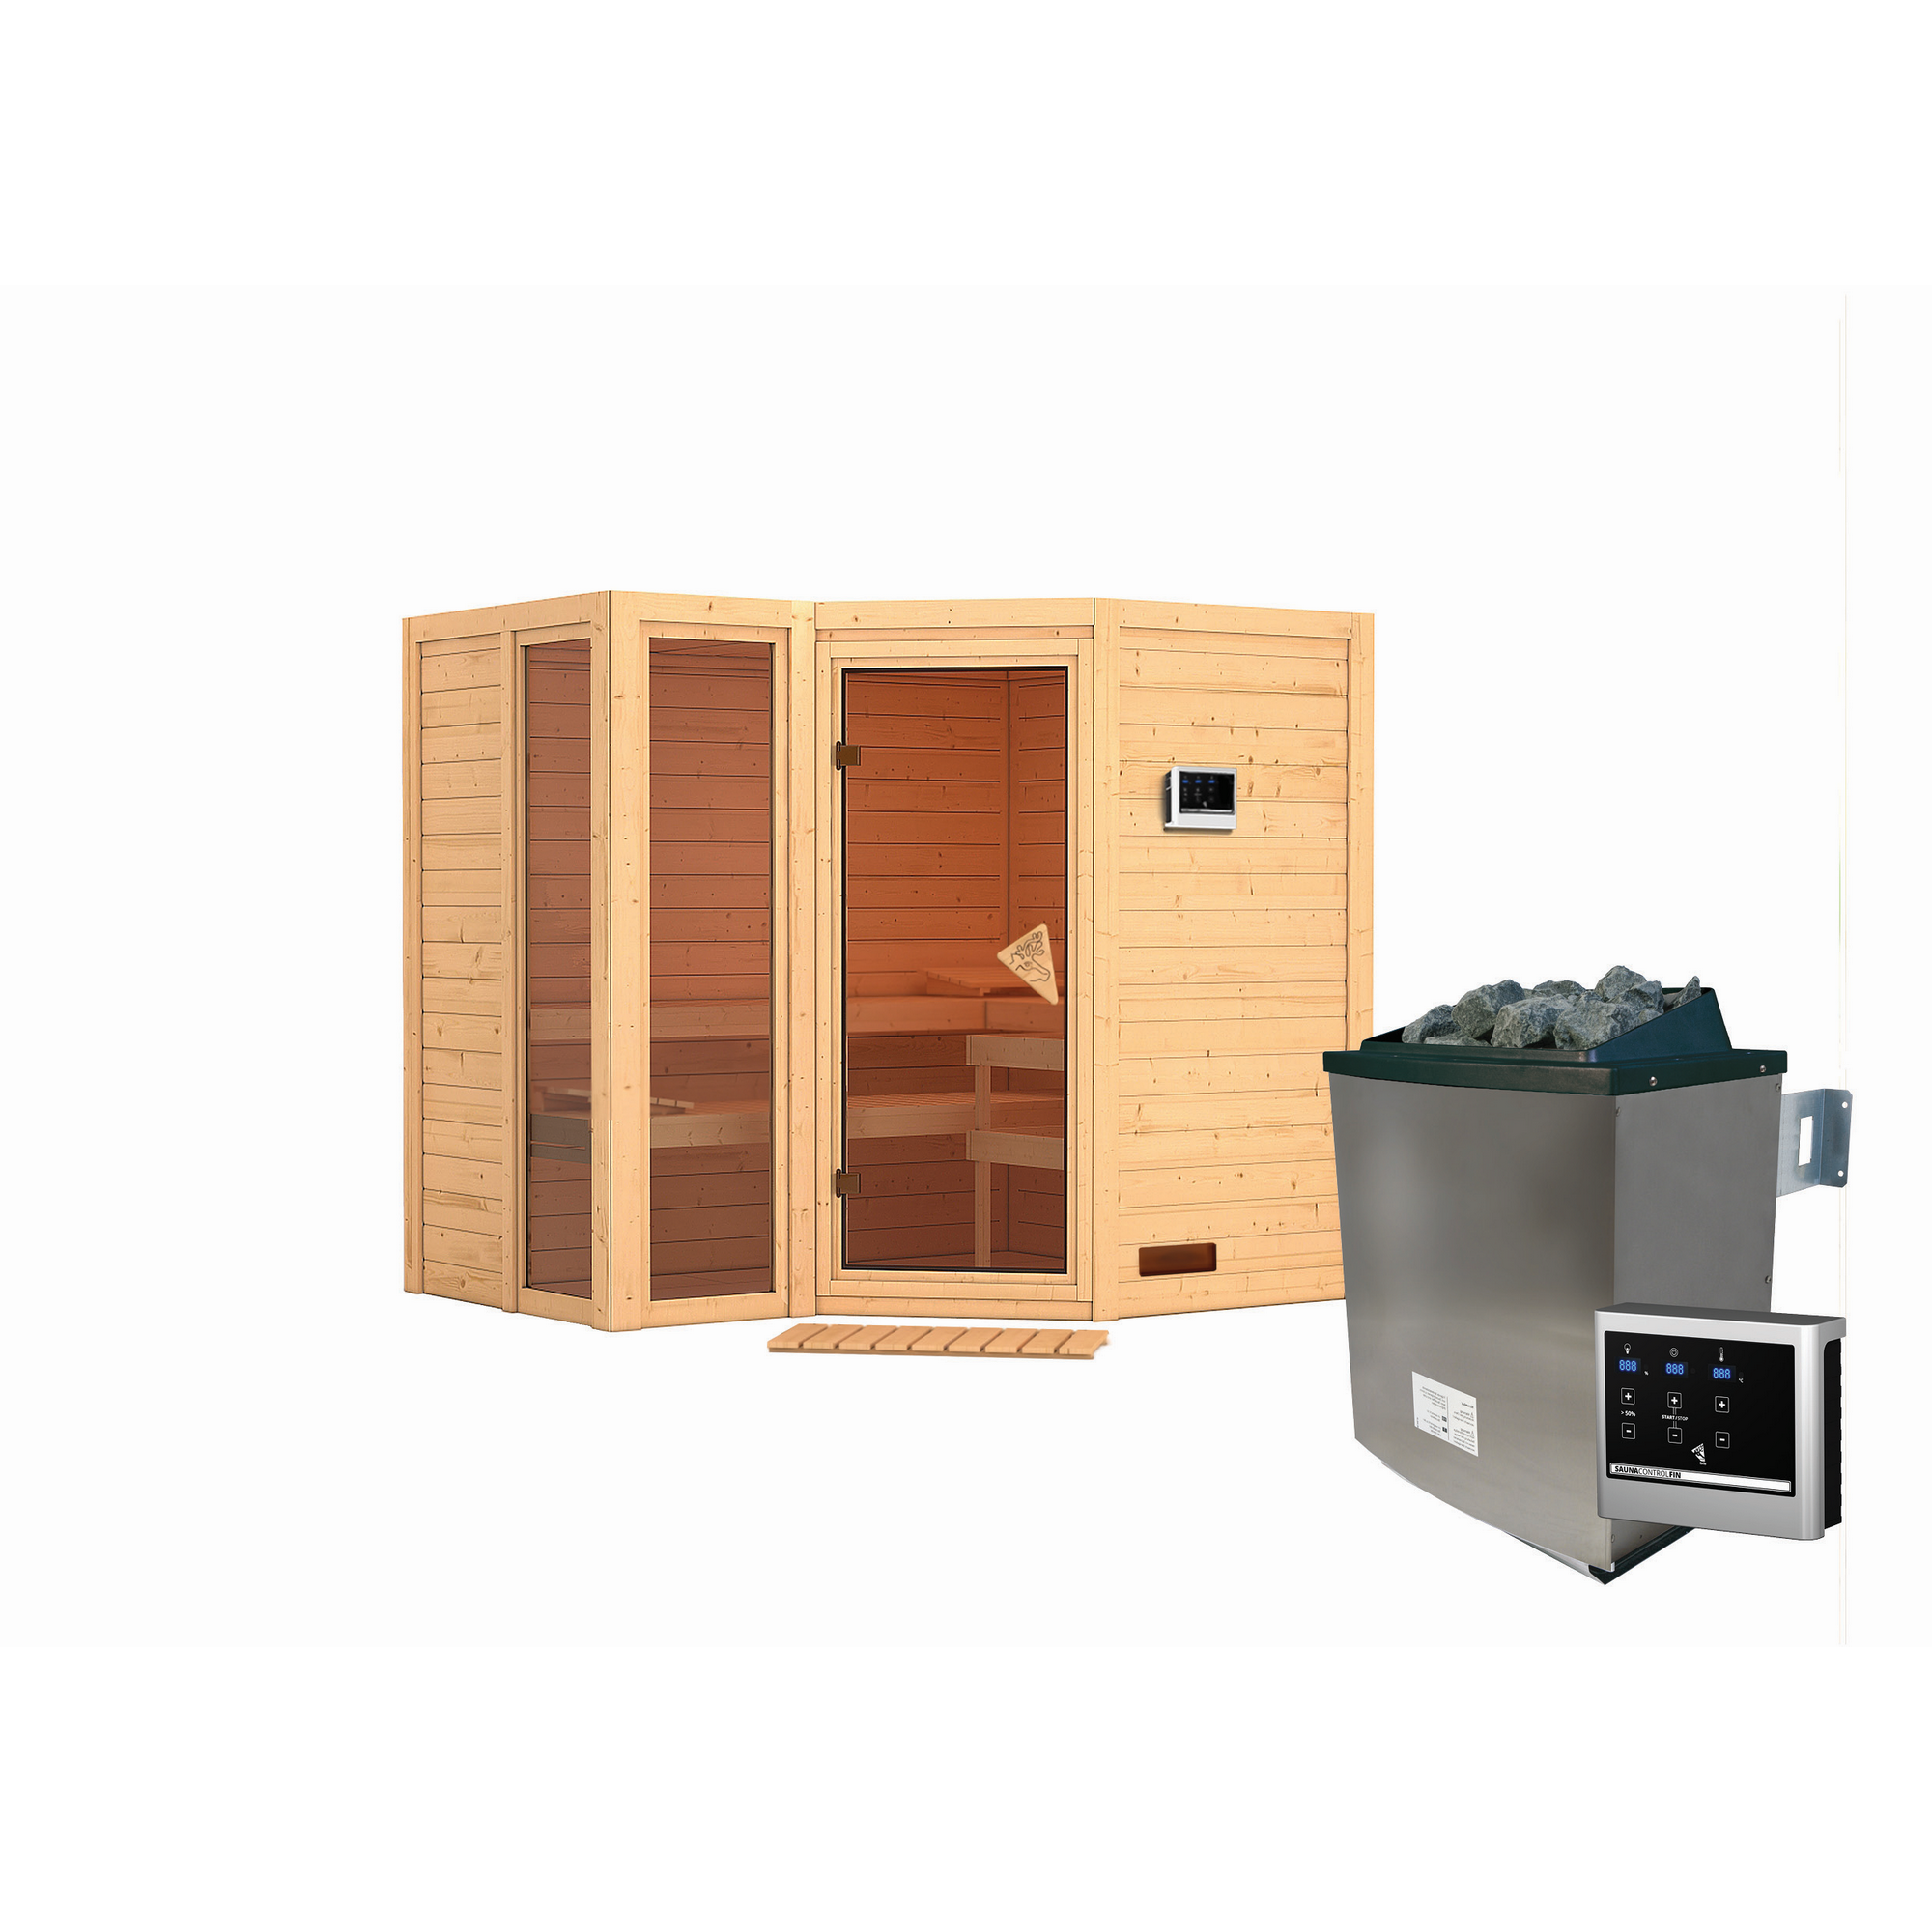 Massivholzsauna 'Ricarda' naturbelassen mit bronzierter Tür 9 kW Ofen externe Steuerung Easy 236 x 184 x 209 cm + product picture